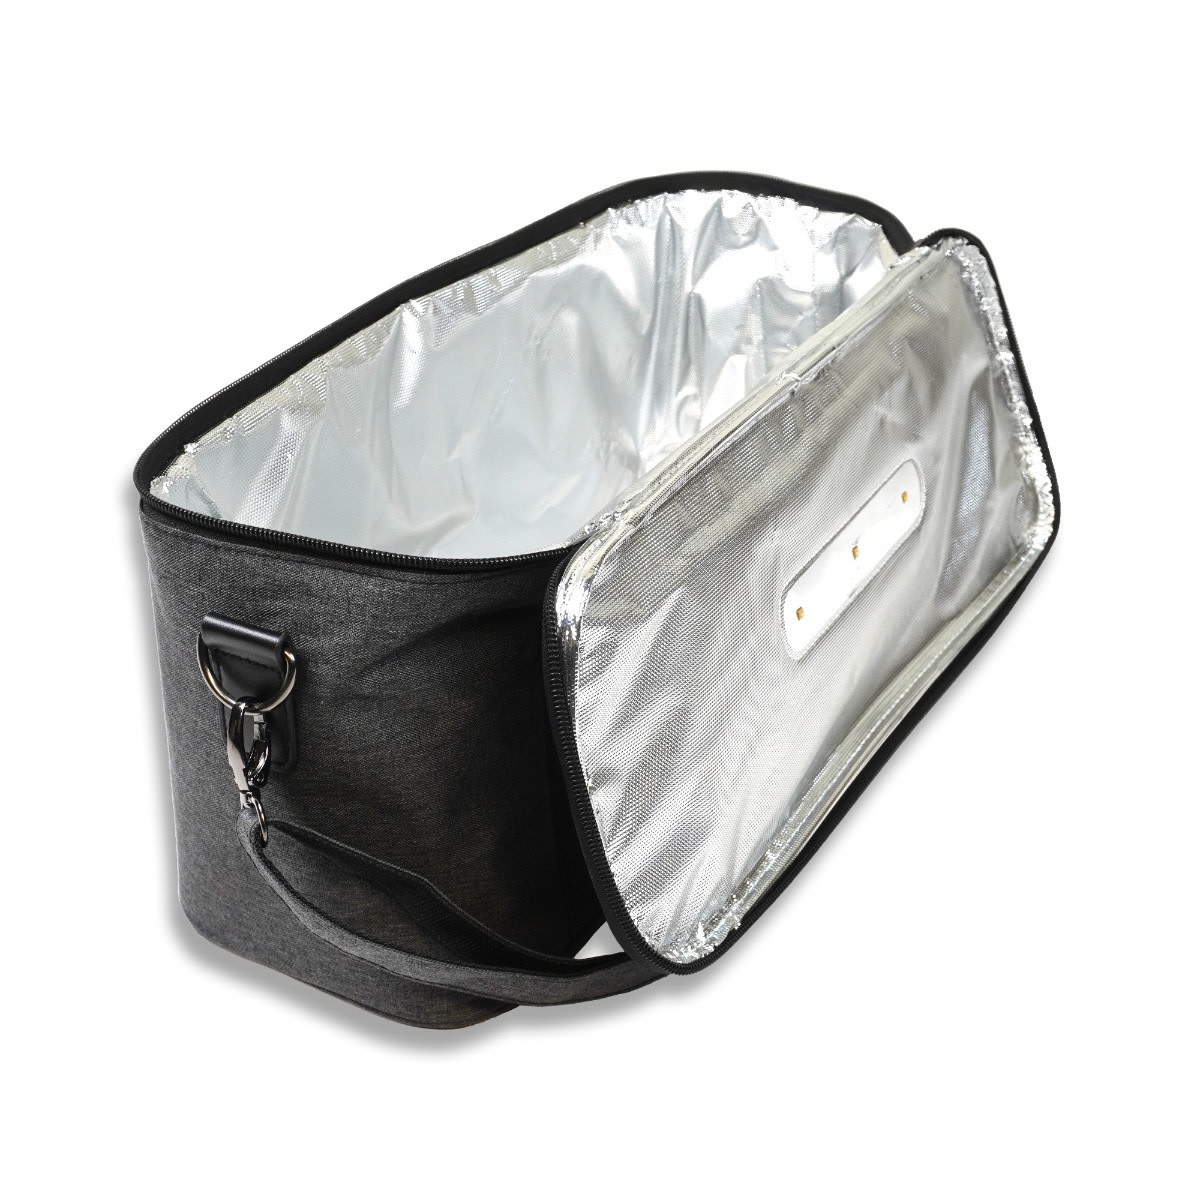 Wonderfold Wonderfold - 2-1 UV LightSterilising Cooler Bag